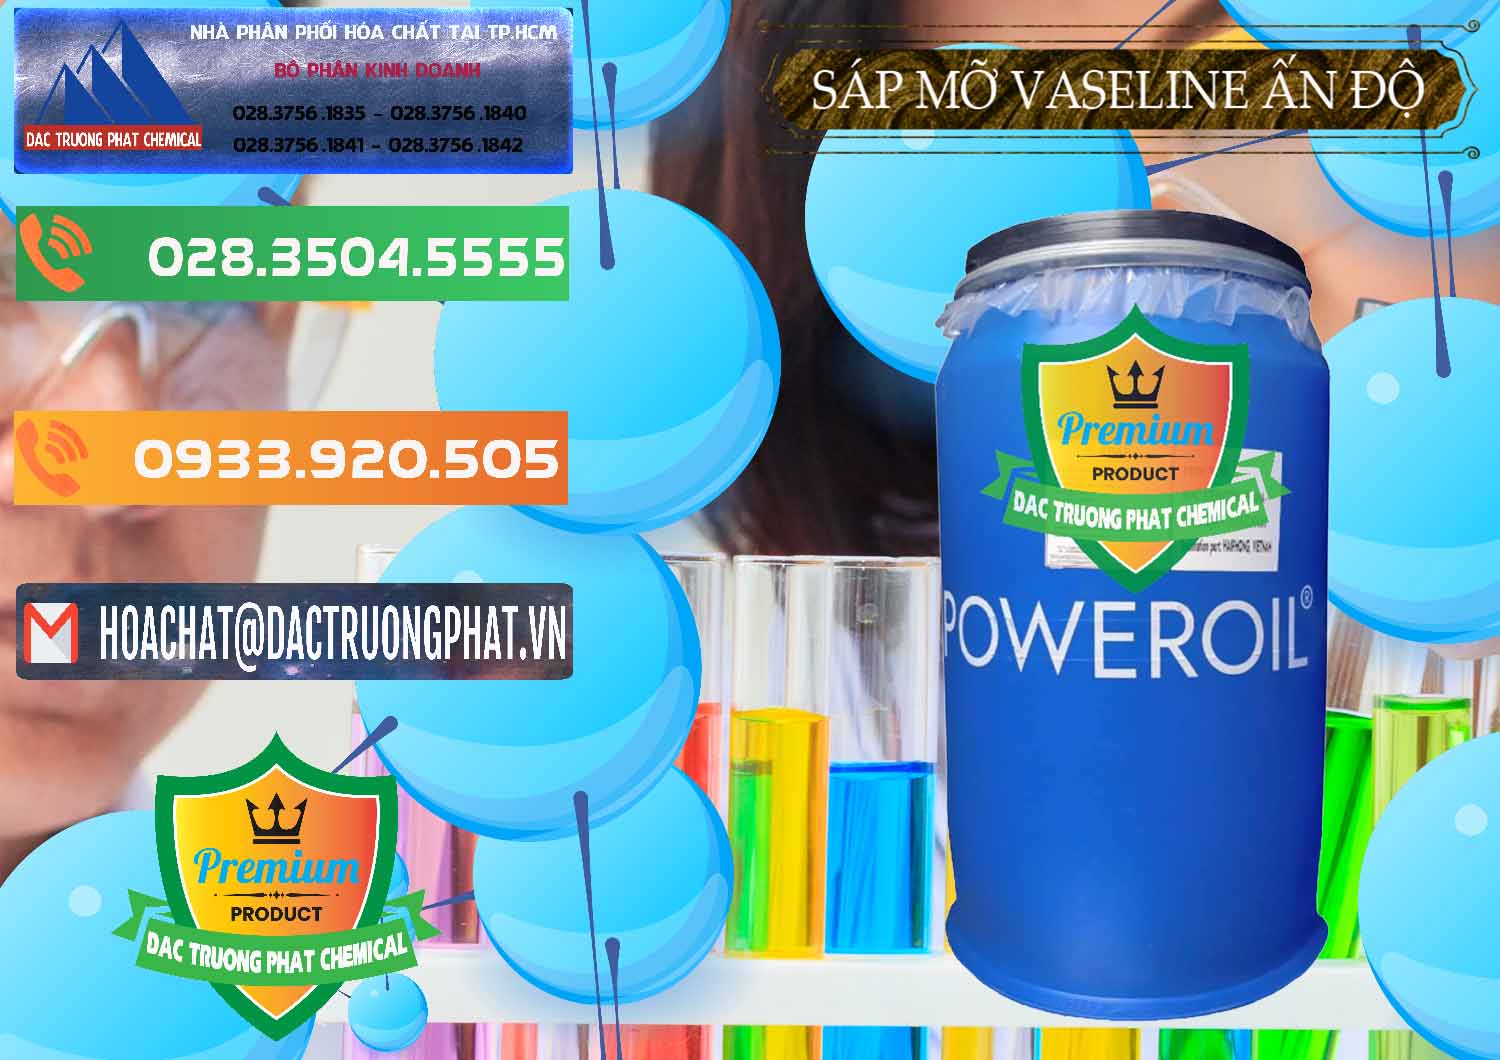 Công ty cung cấp - bán Sáp Mỡ Vaseline Ấn Độ India - 0372 - Nơi chuyên bán _ phân phối hóa chất tại TP.HCM - hoachatxulynuoc.com.vn